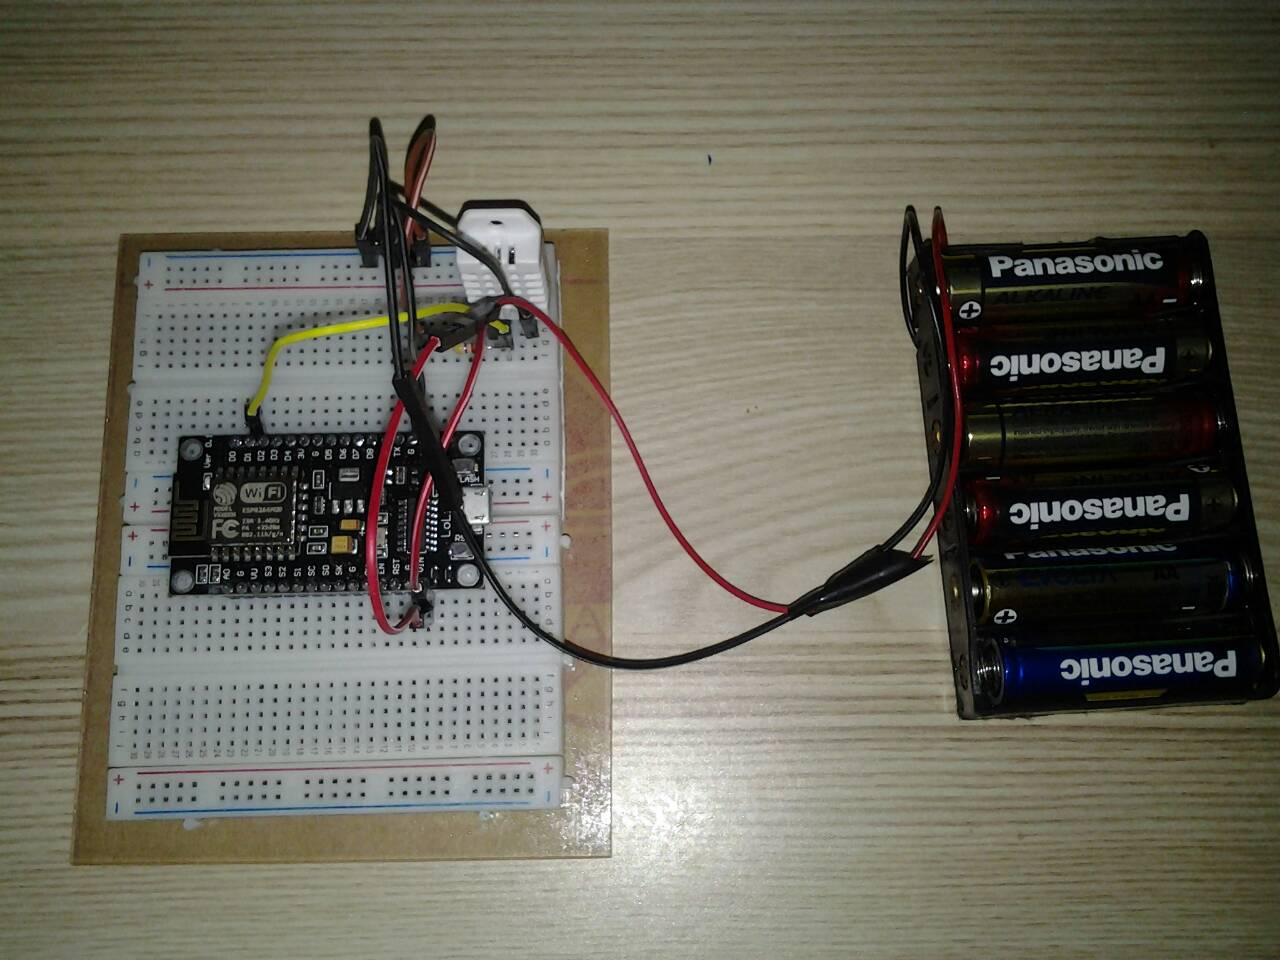 โปรเจค NodeMCU V3 กับ DHT22 แสดงอุณหภูมิและความชื้น - โรบอทสยาม  อุปกรณ์หุ่นยนต์ Arduino : Inspired by LnwShop.com